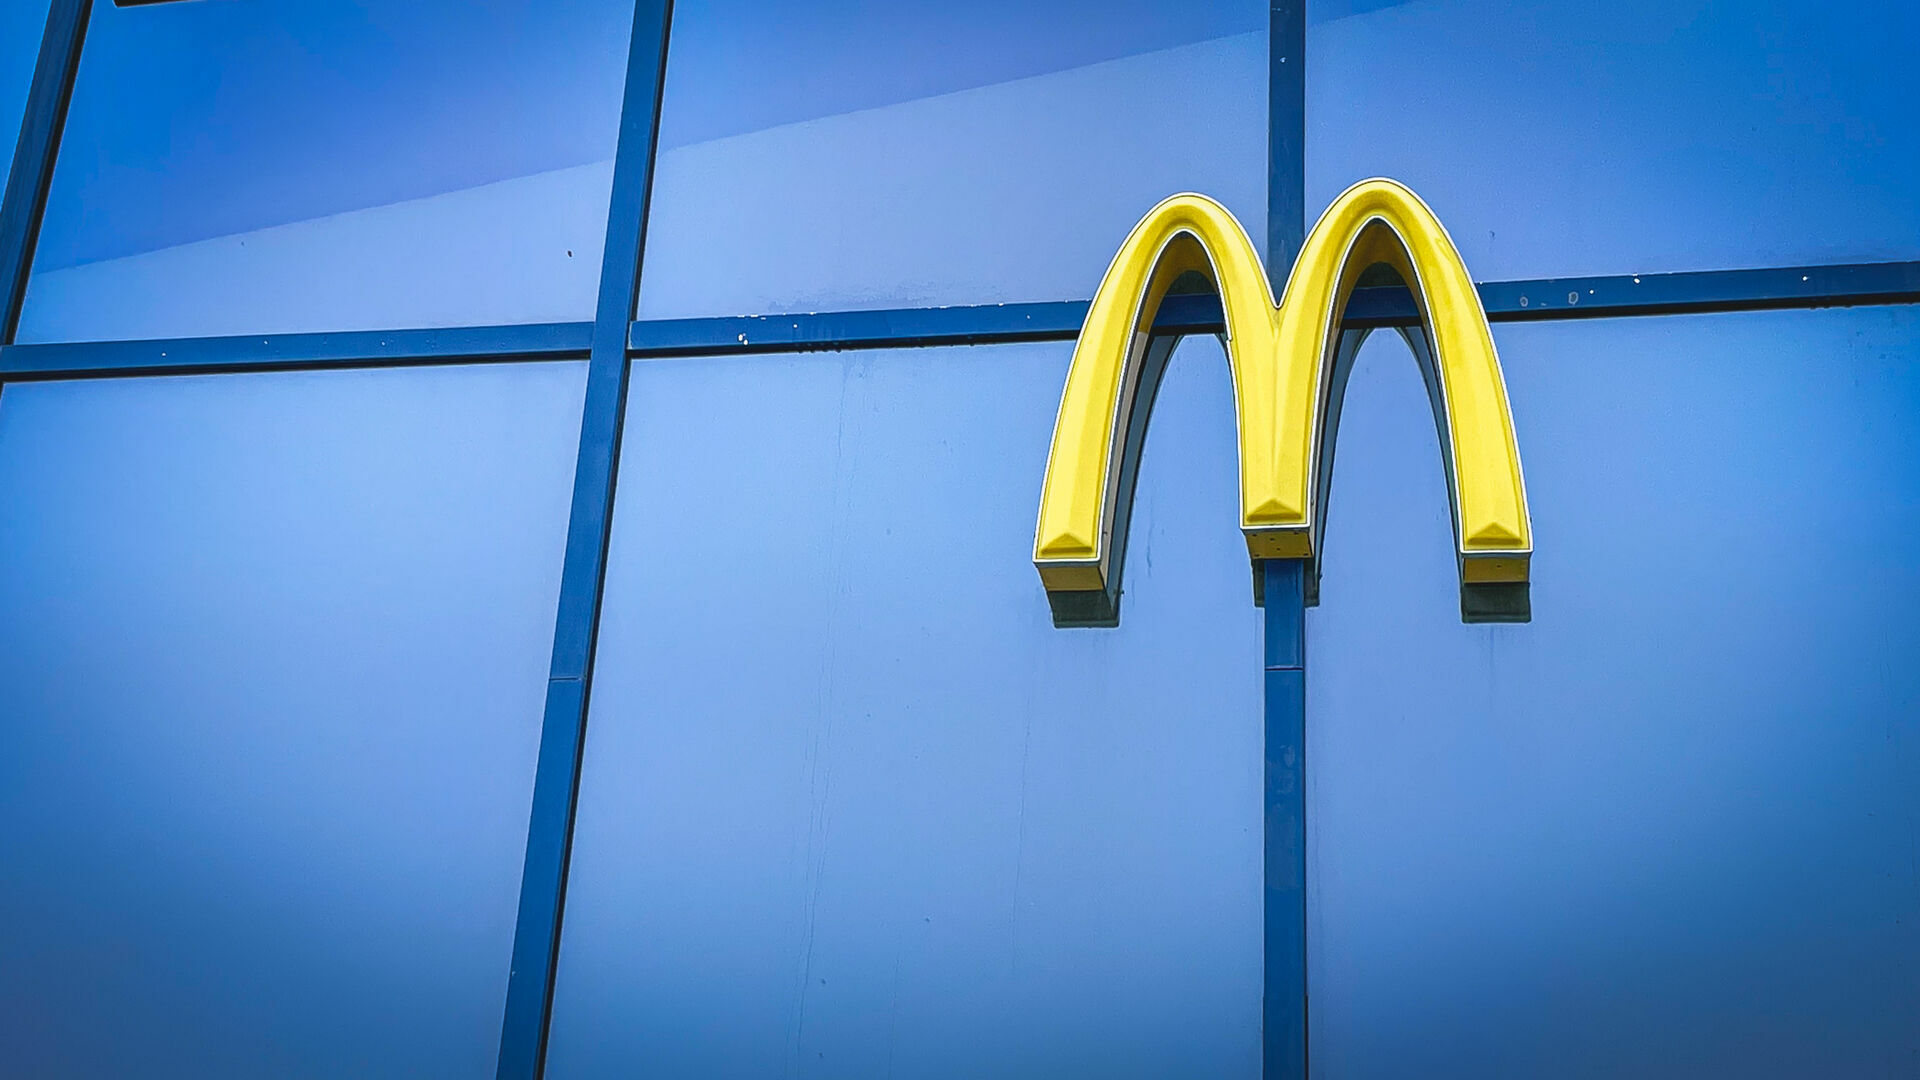 В России разработано новое наименование для сети McDonald’s